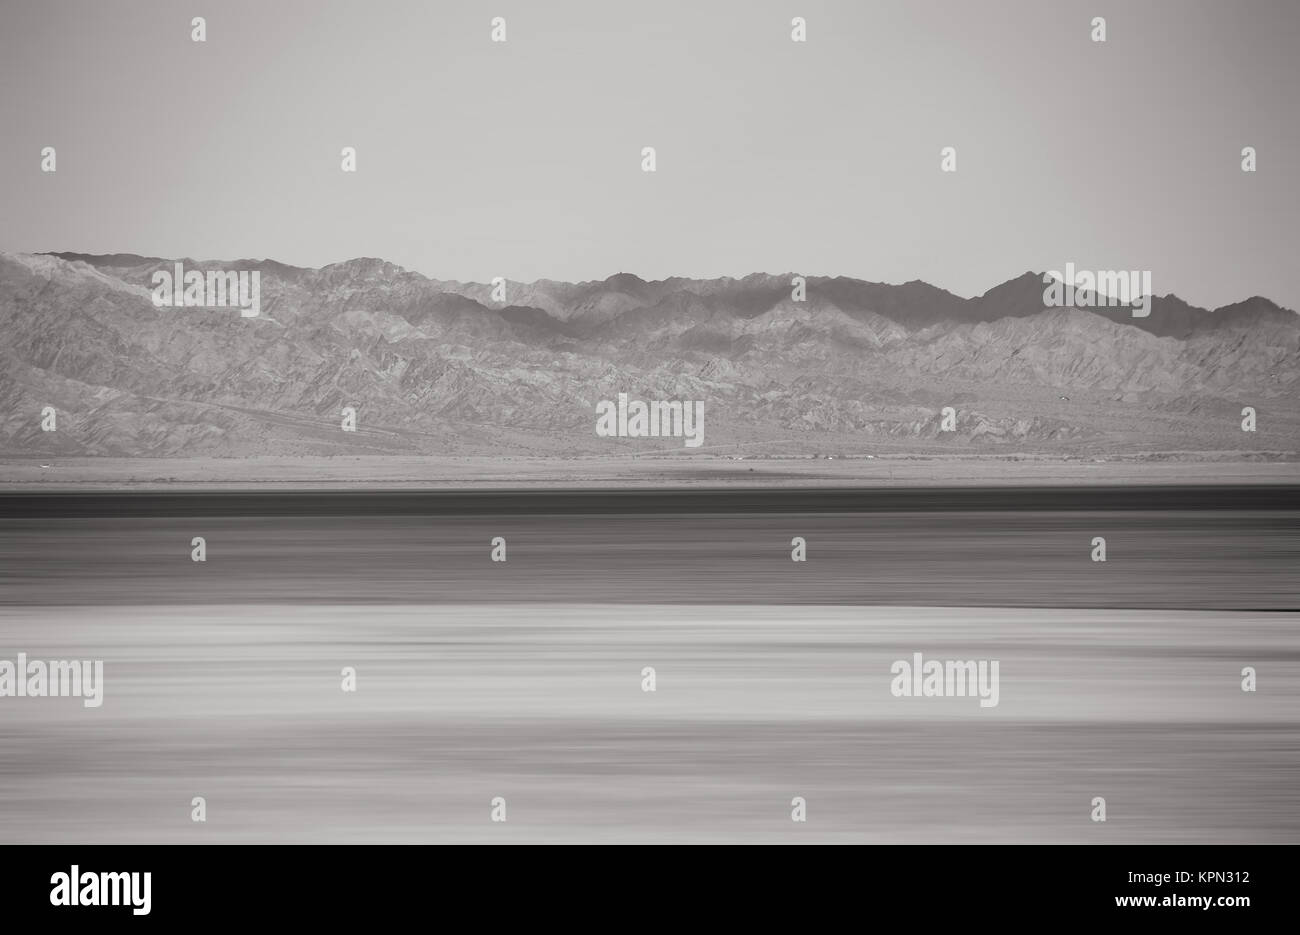 Die verwischte Landschaft des Saltonsees mit Bergketten im Hintergrund. Stock Photo